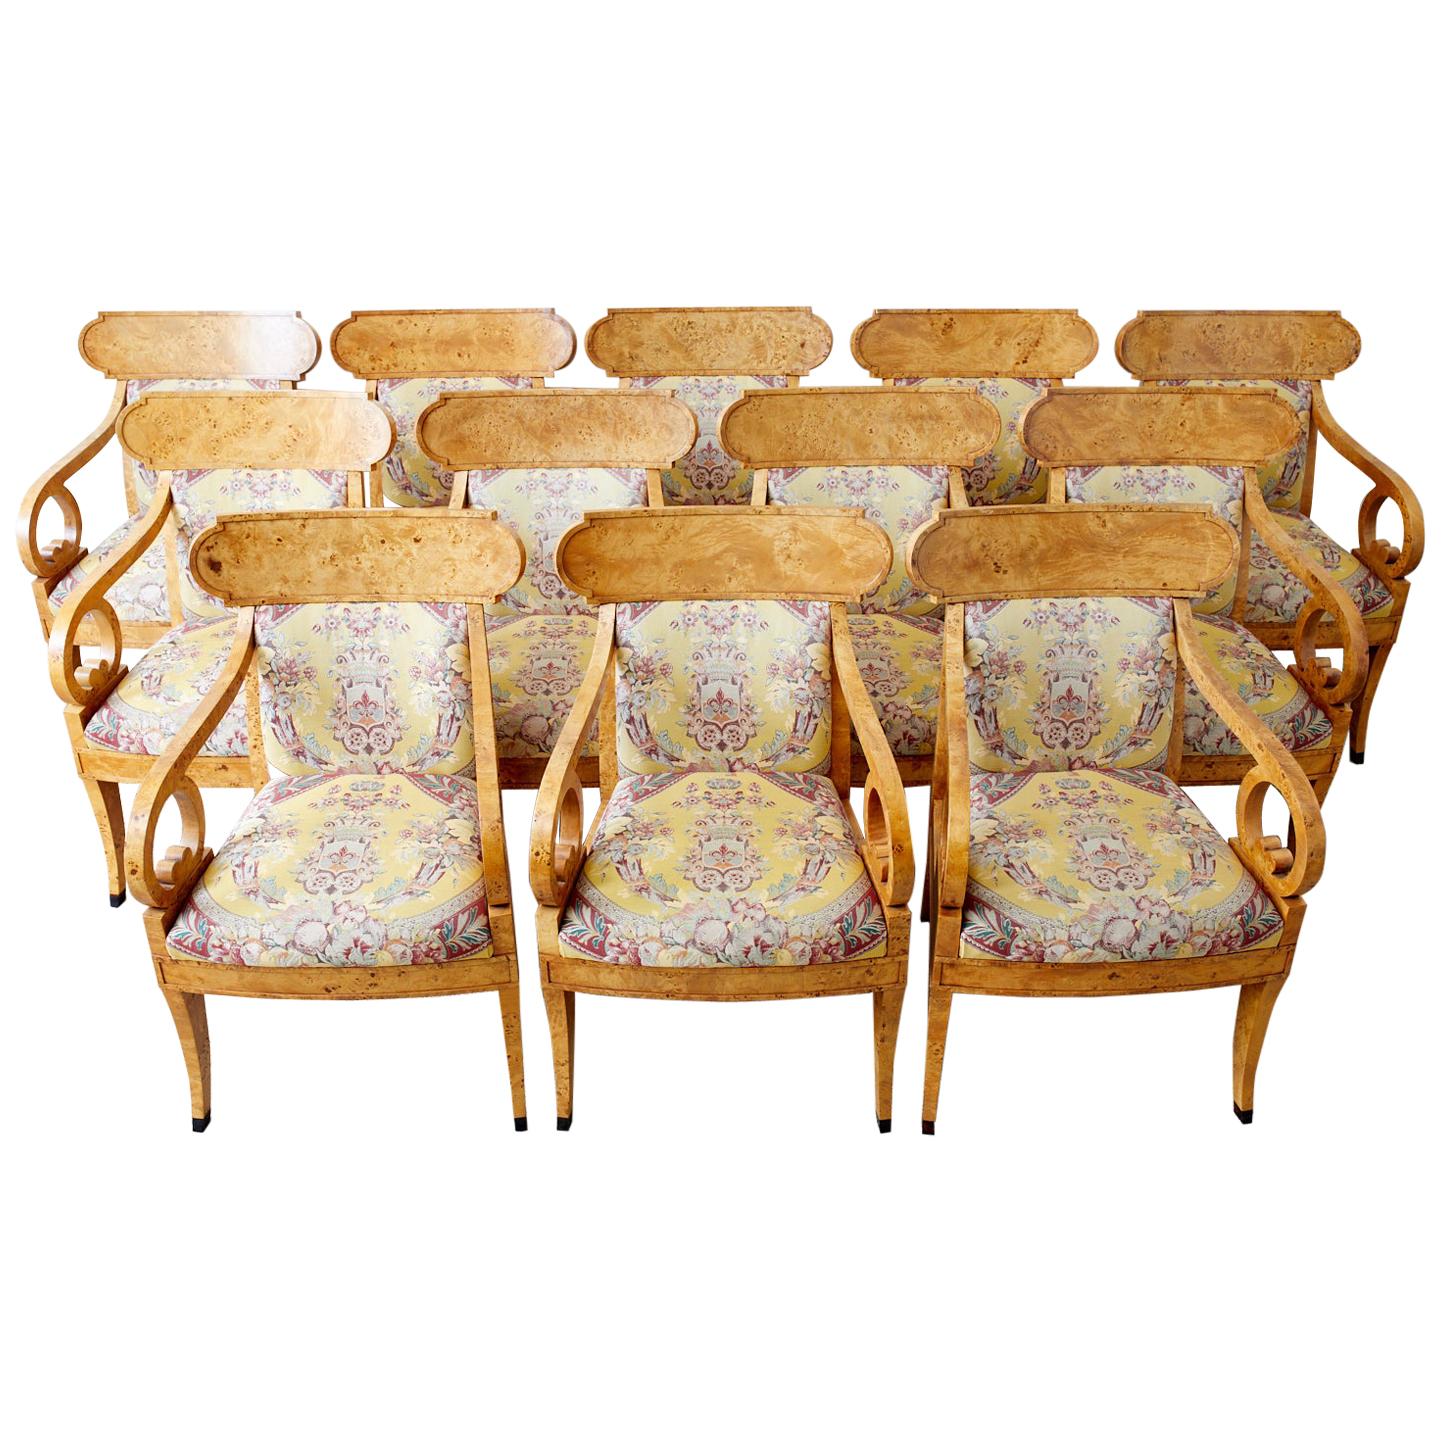 Prächtige englische Klismos-Sessel oder Esszimmerstühle im Regency-Stil von Baker Furniture. Die handgefertigten Rahmen sind mit dramatischen Wurzelholzfurnieren verkleidet. Die geschwungene Rückenlehne in Klismos-Form wird von anmutig geschwungenen